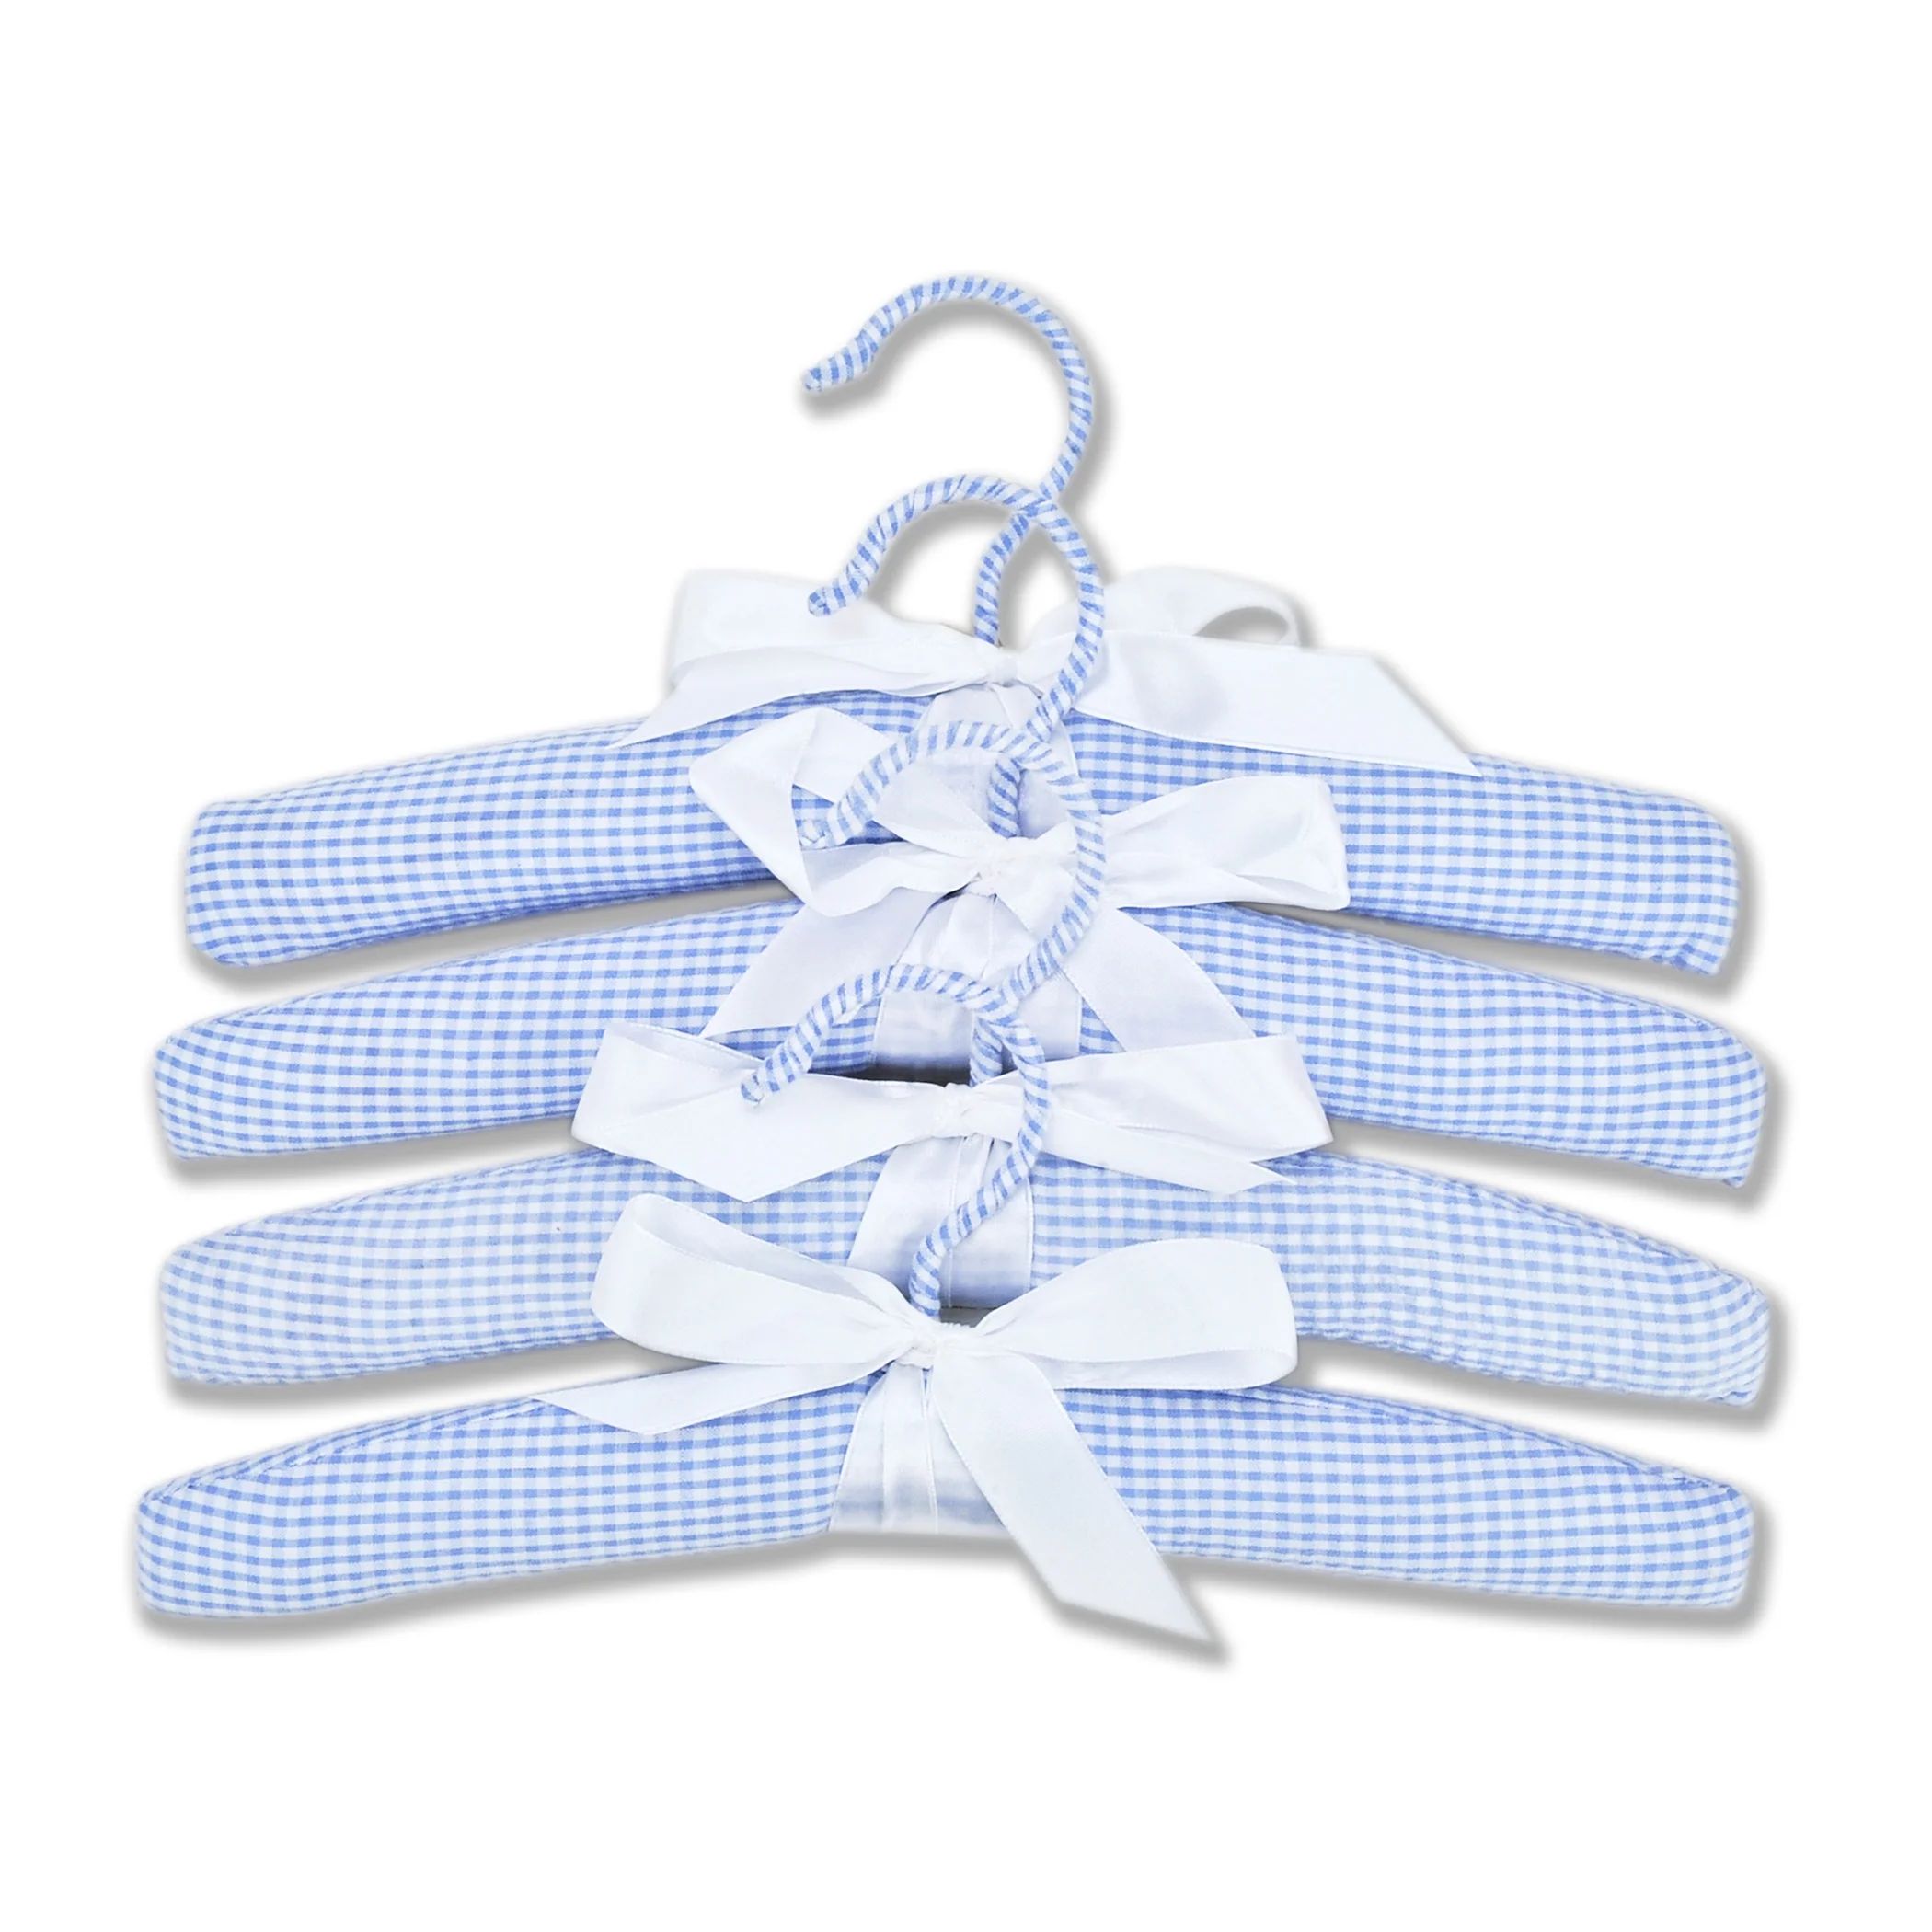 Nursery Hangers - 4 Pack Blue Gingham Seersucker Set by Trend Lab | Walmart (US)